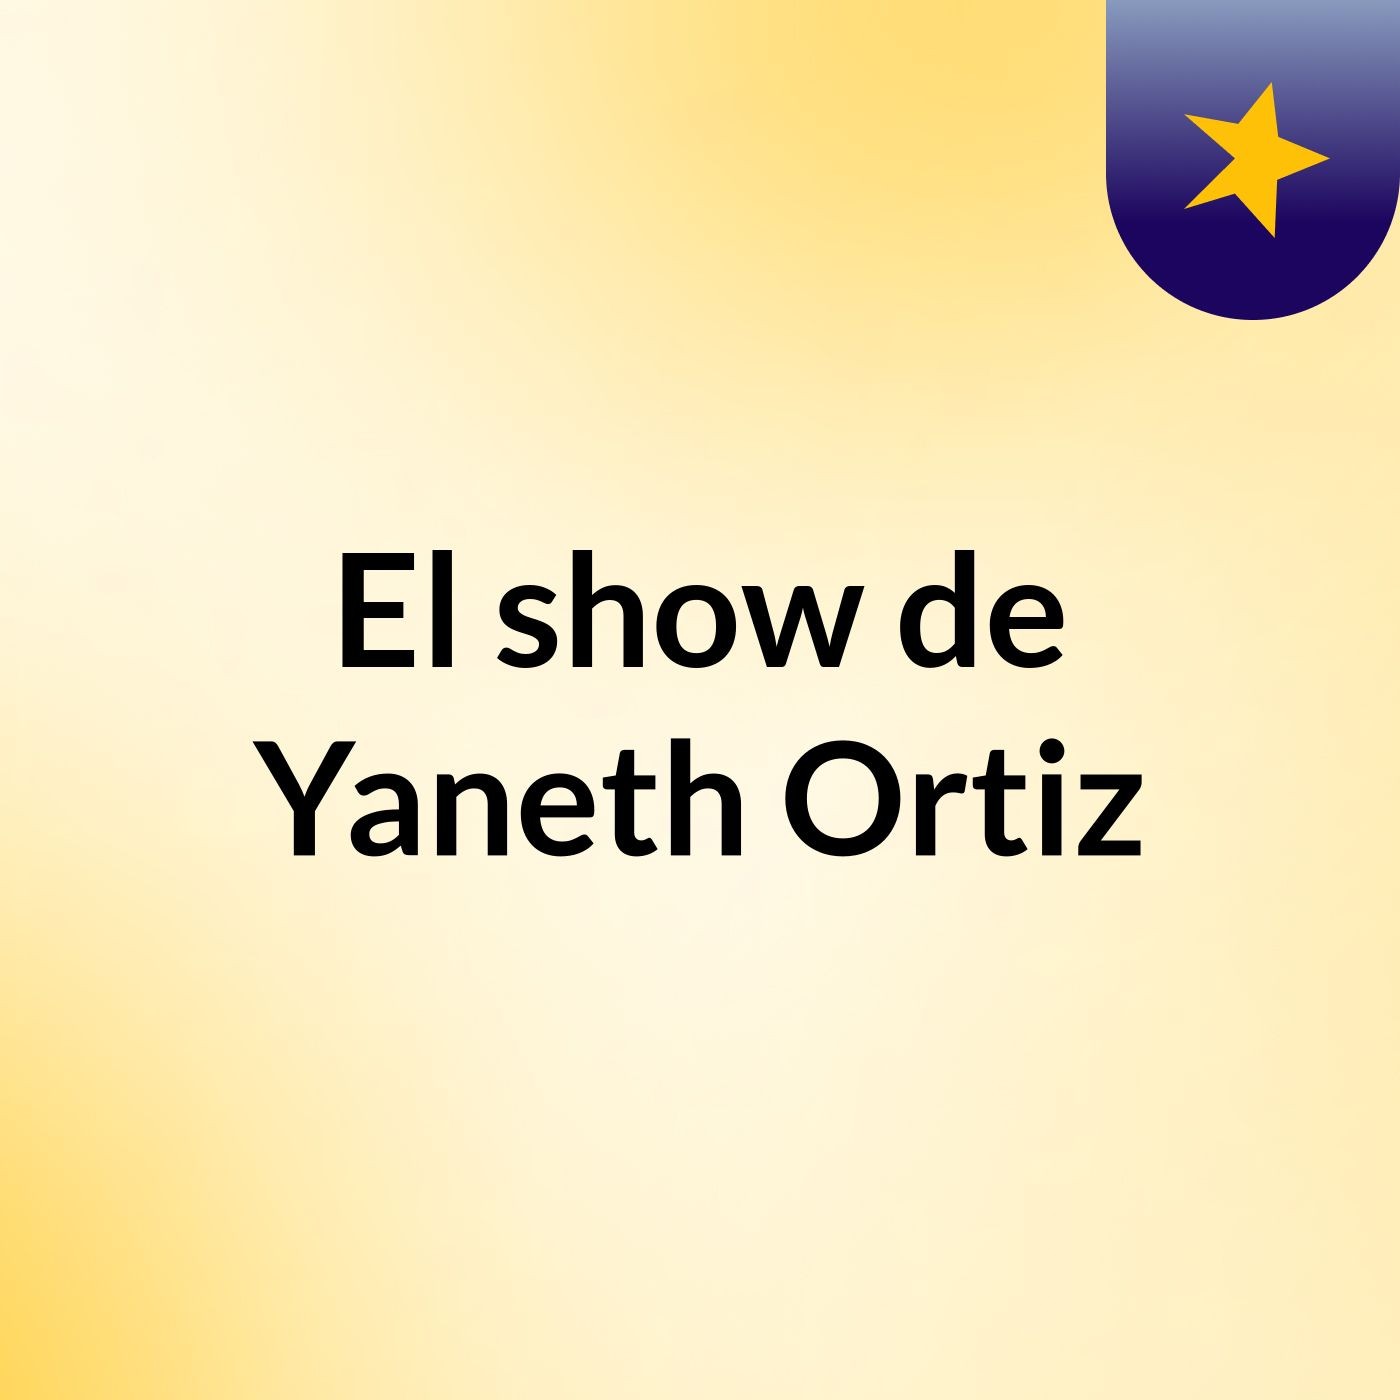 El show de Yaneth Ortiz